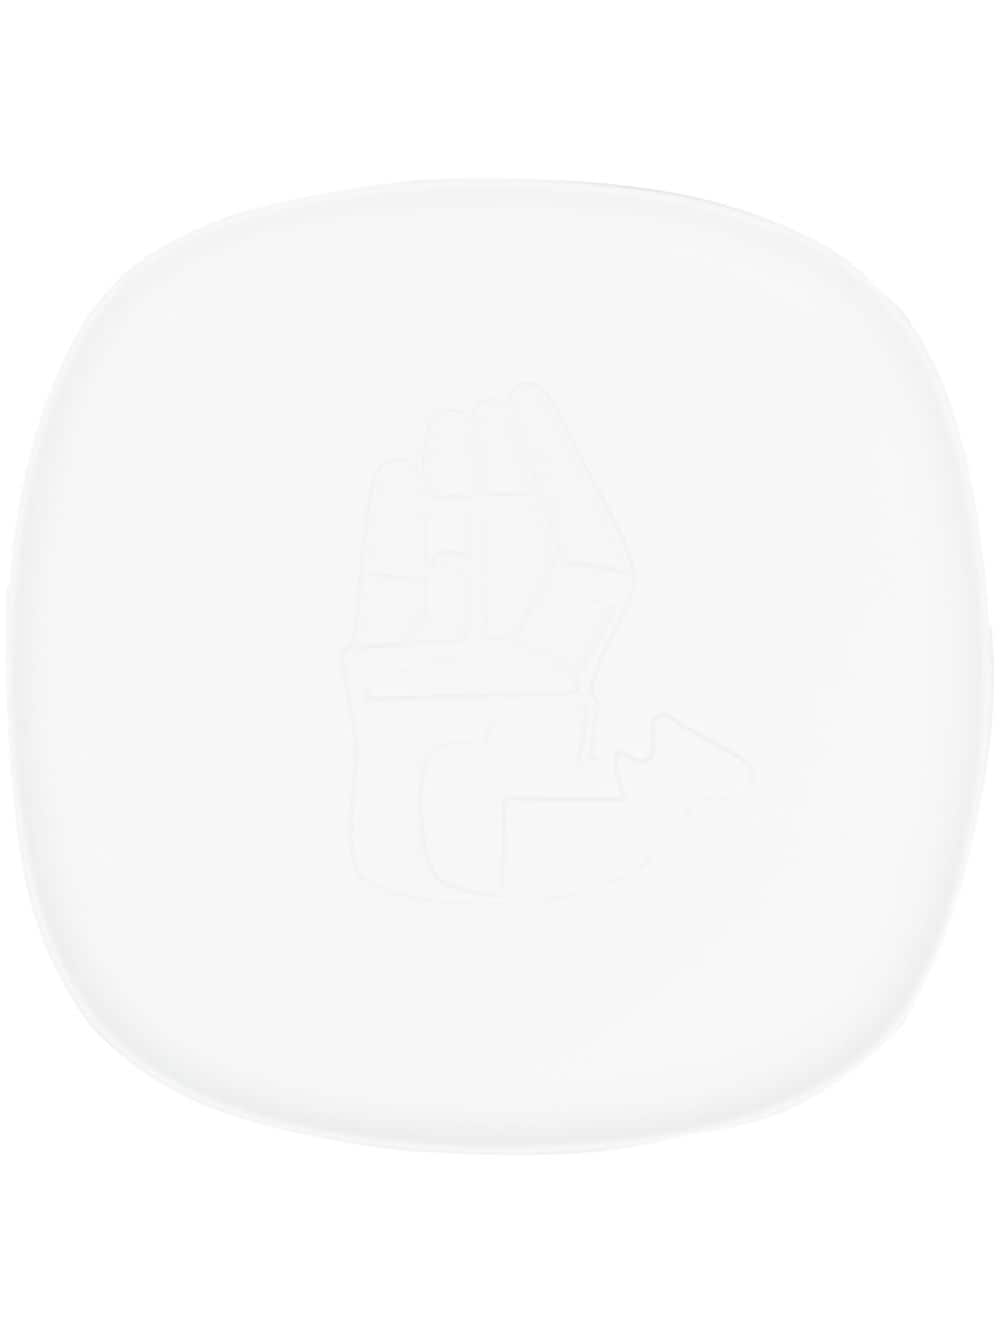 Cassina Le Main Ouvert Tablett In White